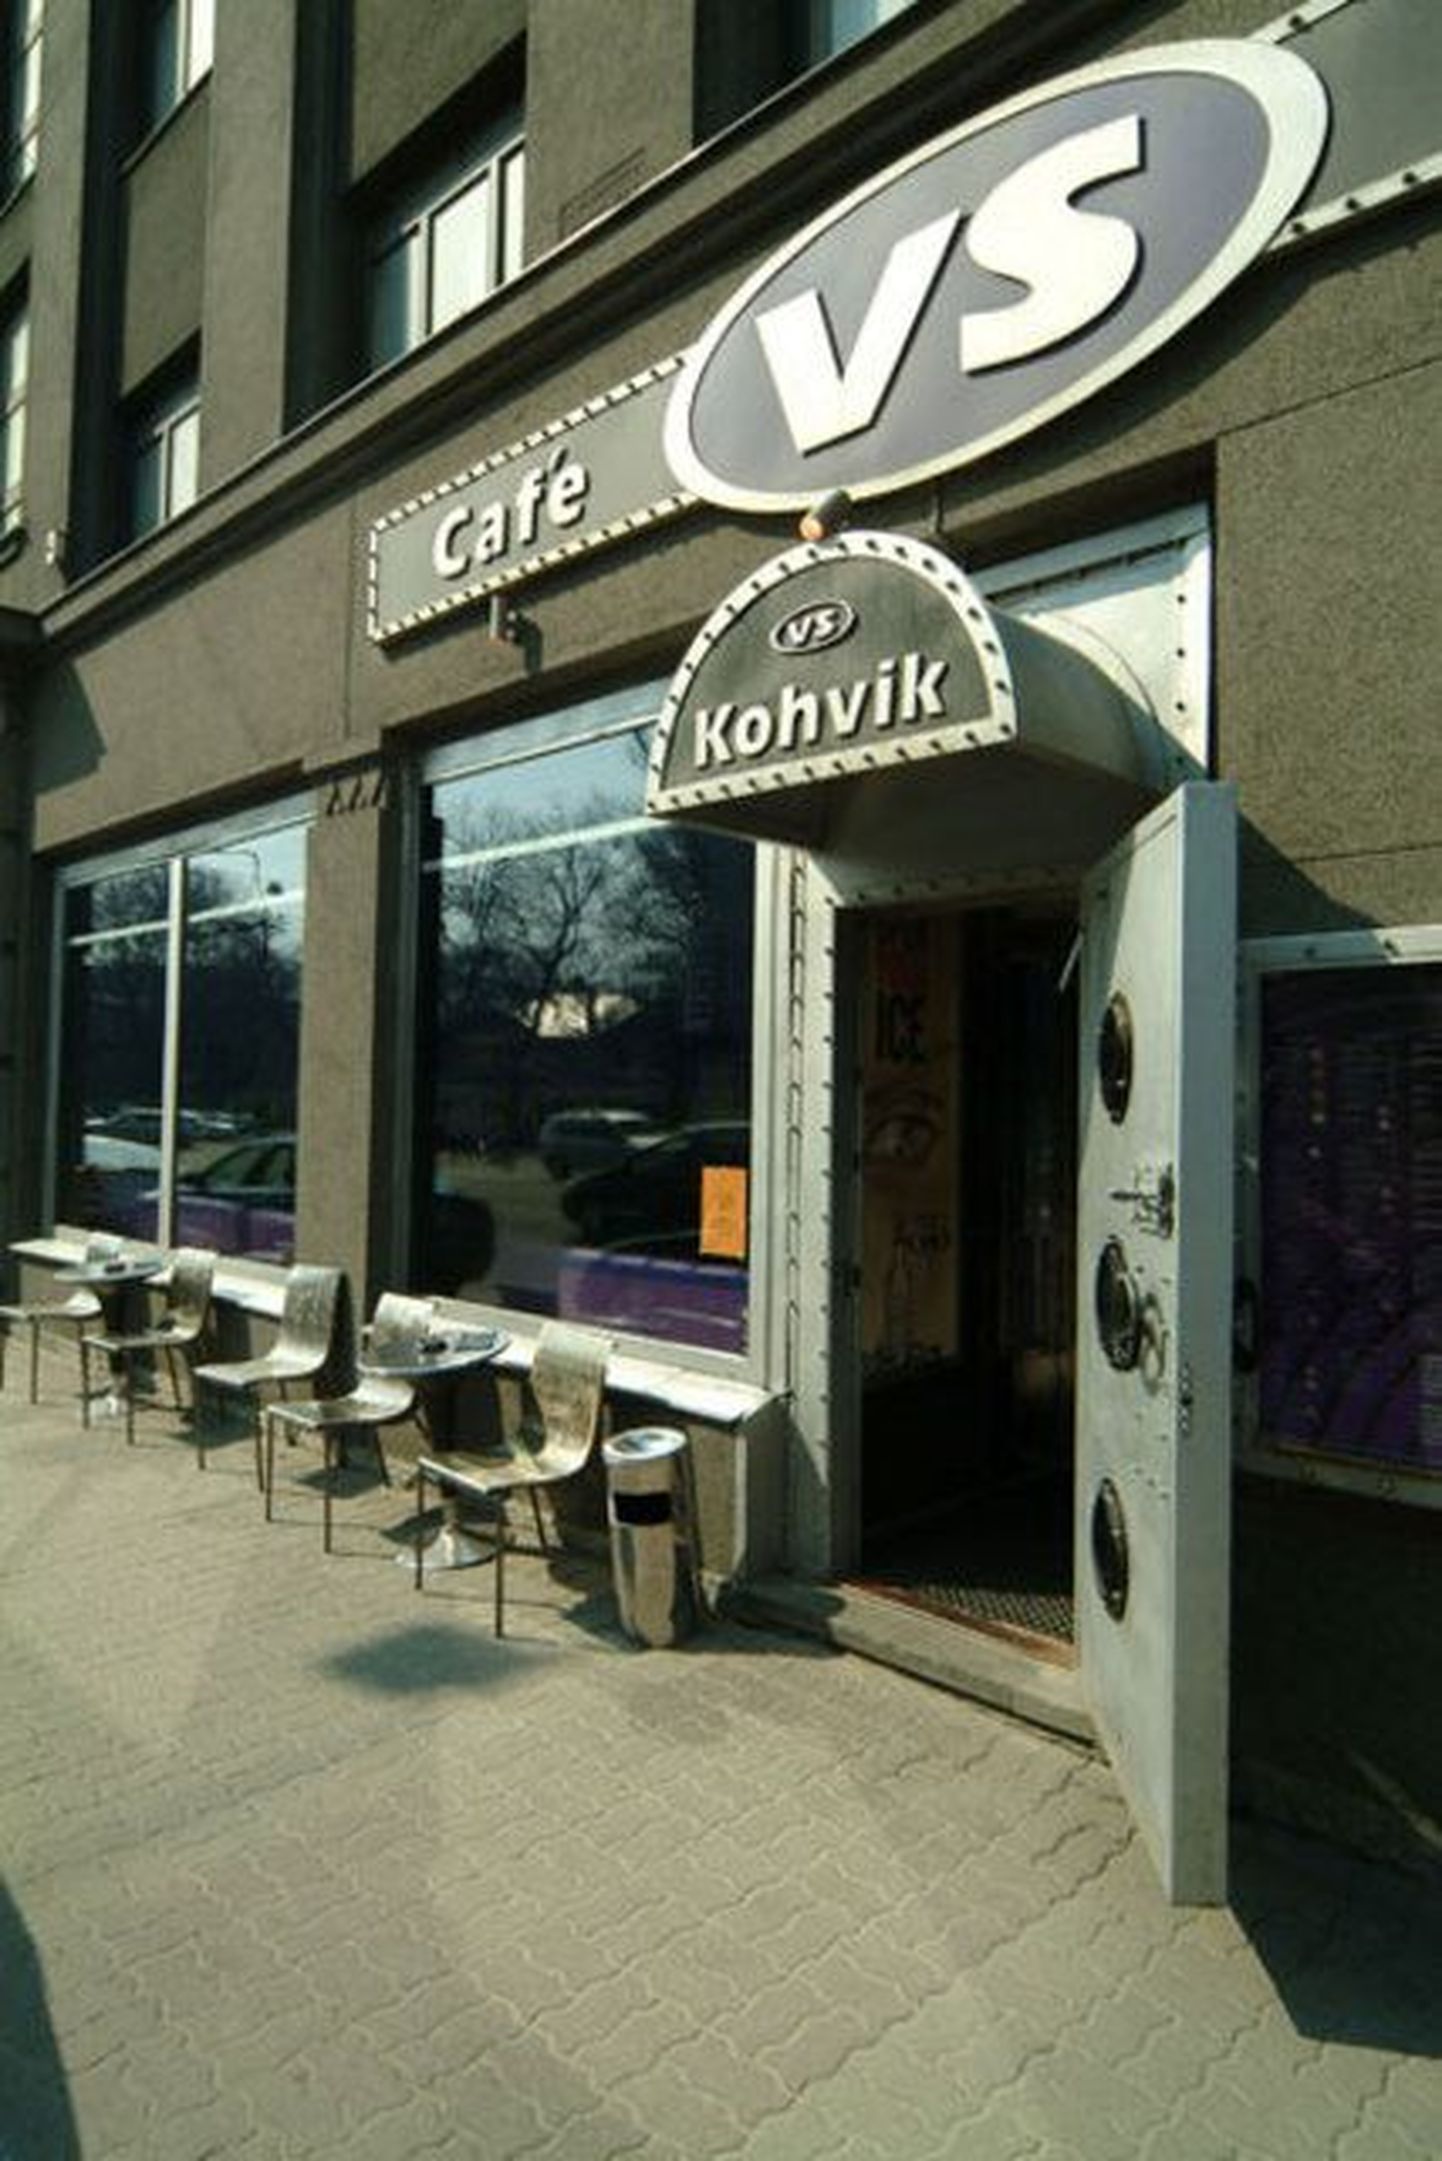 Cafe VSi kassale sai kohviku internetivõrgu kasutaja suurema vaevata ligi.